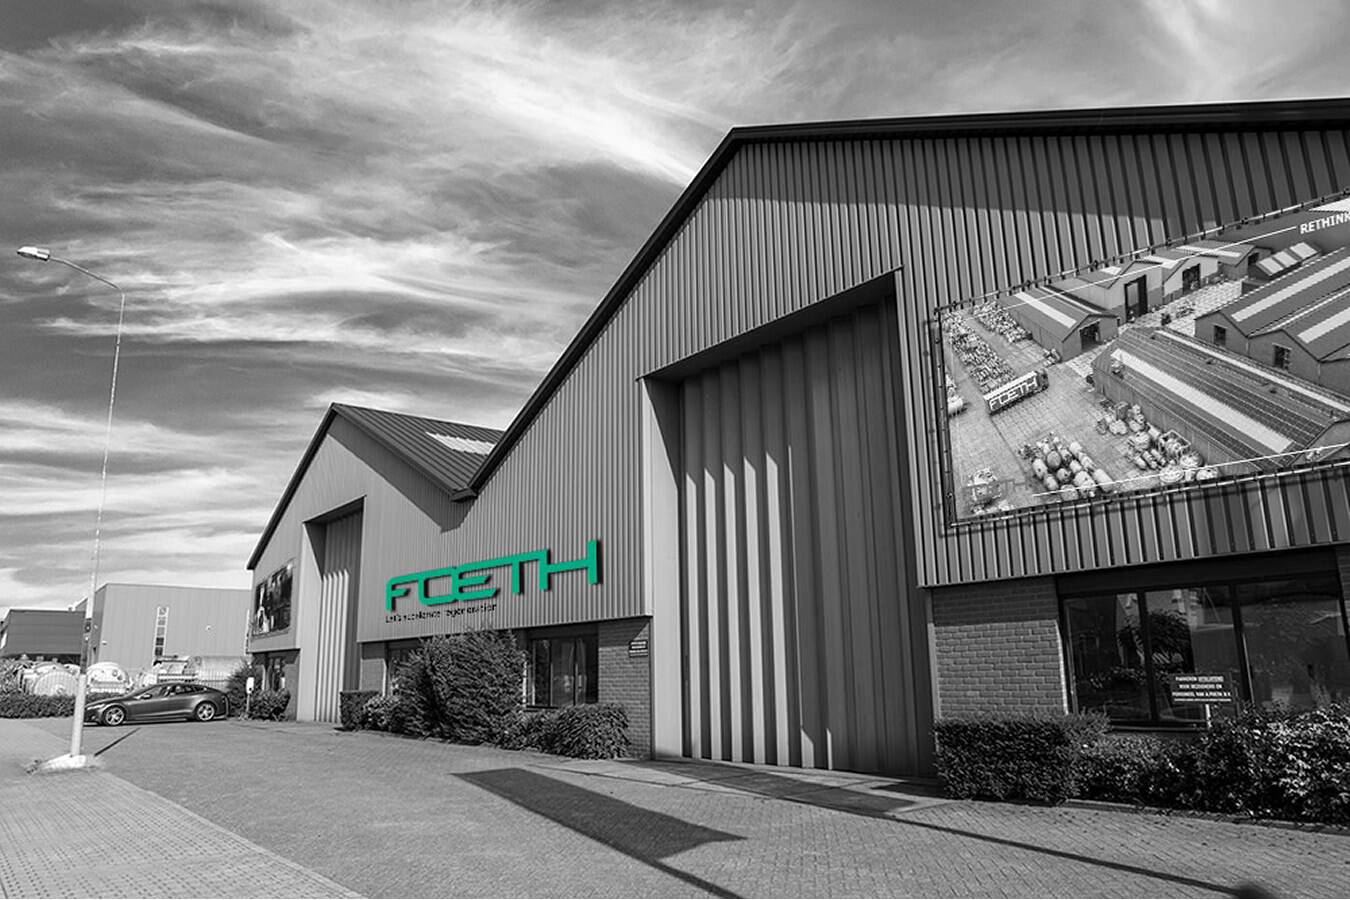 Foeth enthüllt neue Markenidentität und stellt neuen CEO vor Foeth, seit über 100 Jahren eine treibende Kraft in der Kreislaufwirtschaft von Prozessmaschinen, präsentiert heute seine überarbeitete Markenidentität mit einem völlig neuen Look.